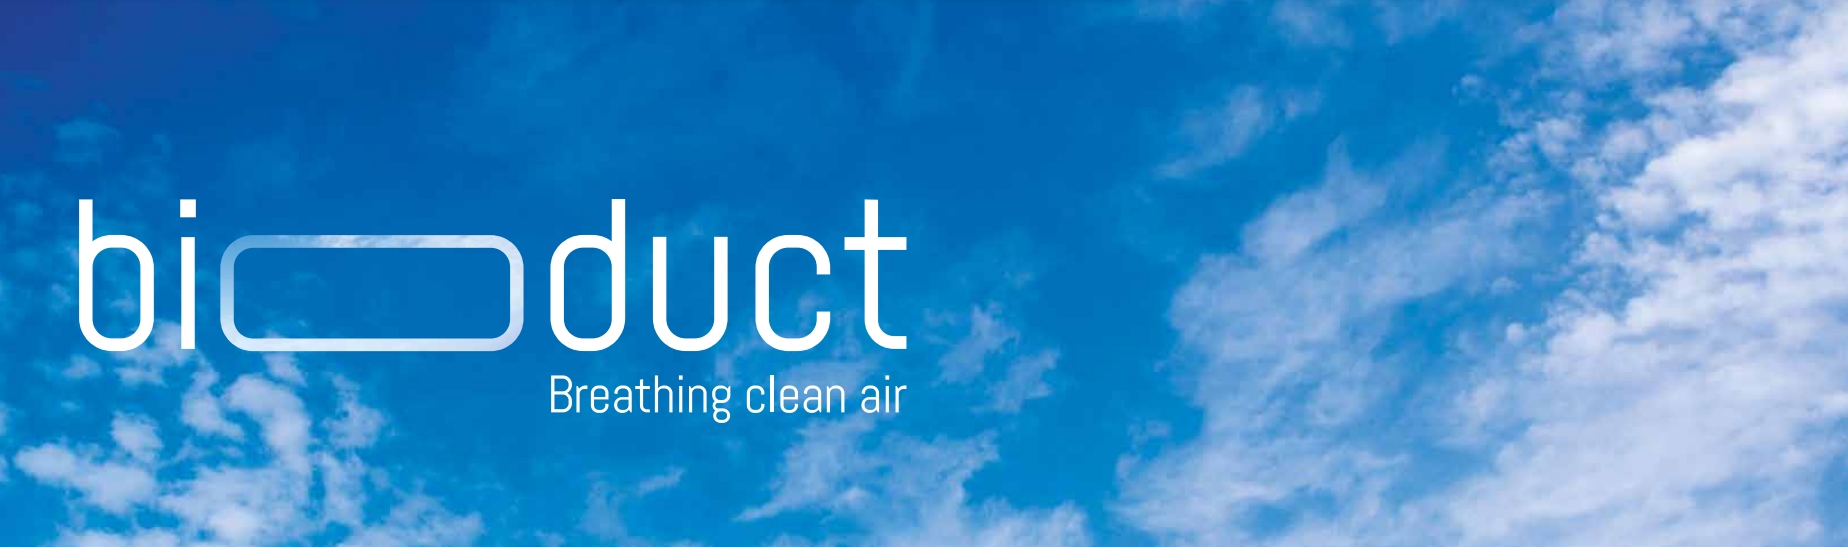 Bioduct: Una Revolución en la Calidad del Aire Controlada - Pintura Fotocatalítica que Cambia la Calidad del Aire.